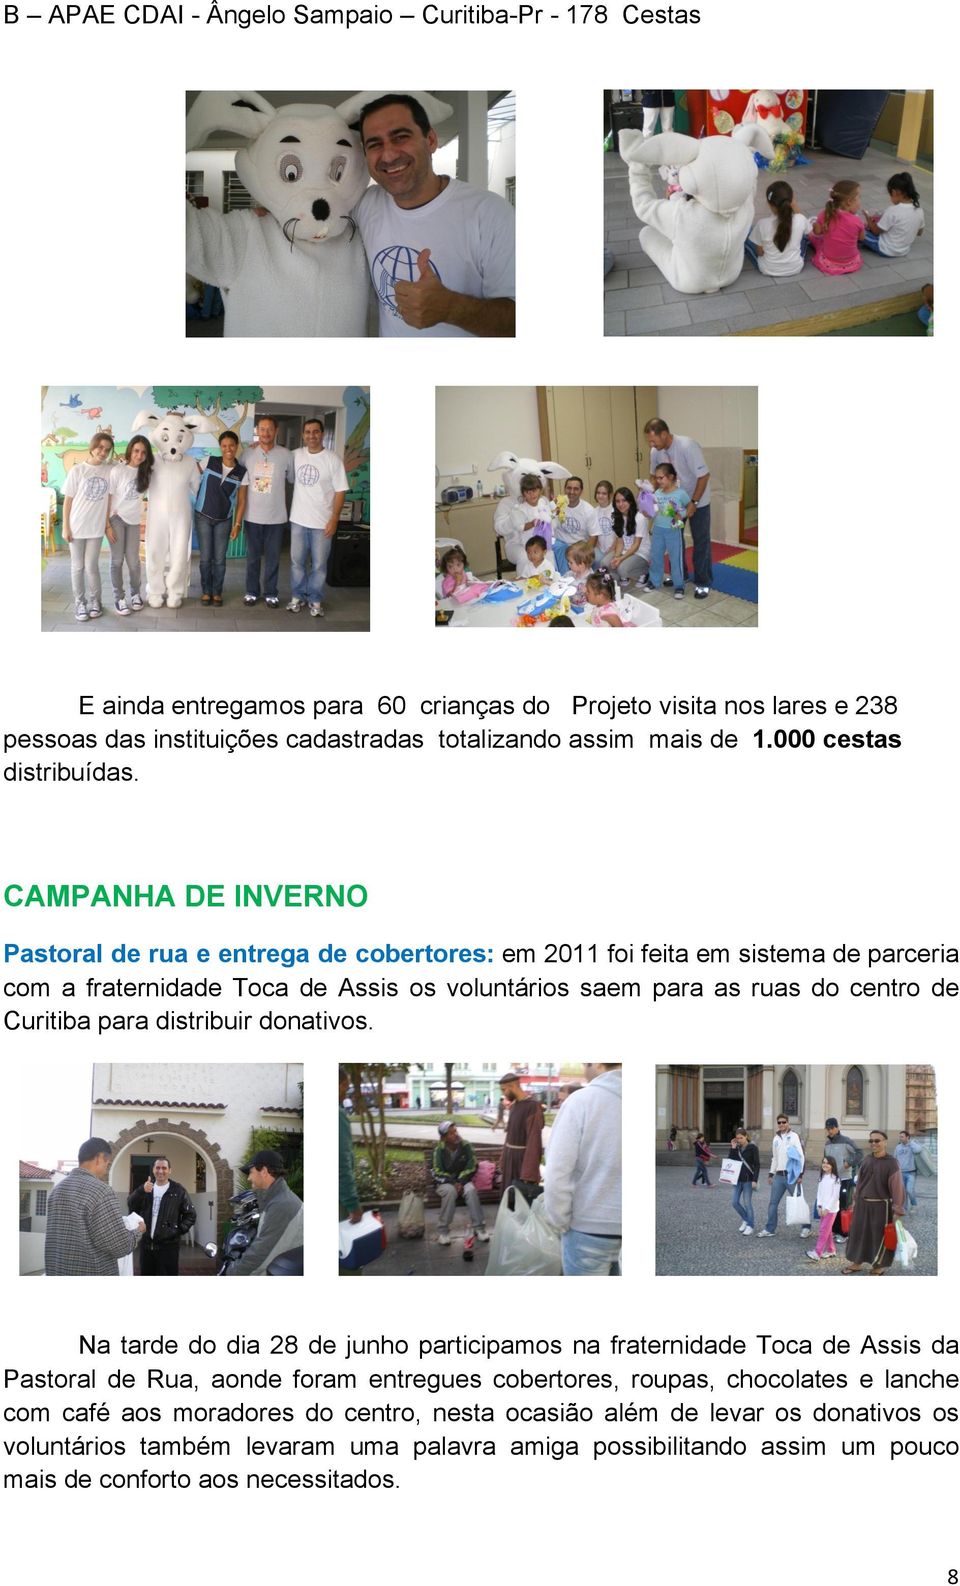 CAMPANHA DE INVERNO Pastoral de rua e entrega de cobertores: em 2011 foi feita em sistema de parceria com a fraternidade Toca de Assis os voluntários saem para as ruas do centro de Curitiba